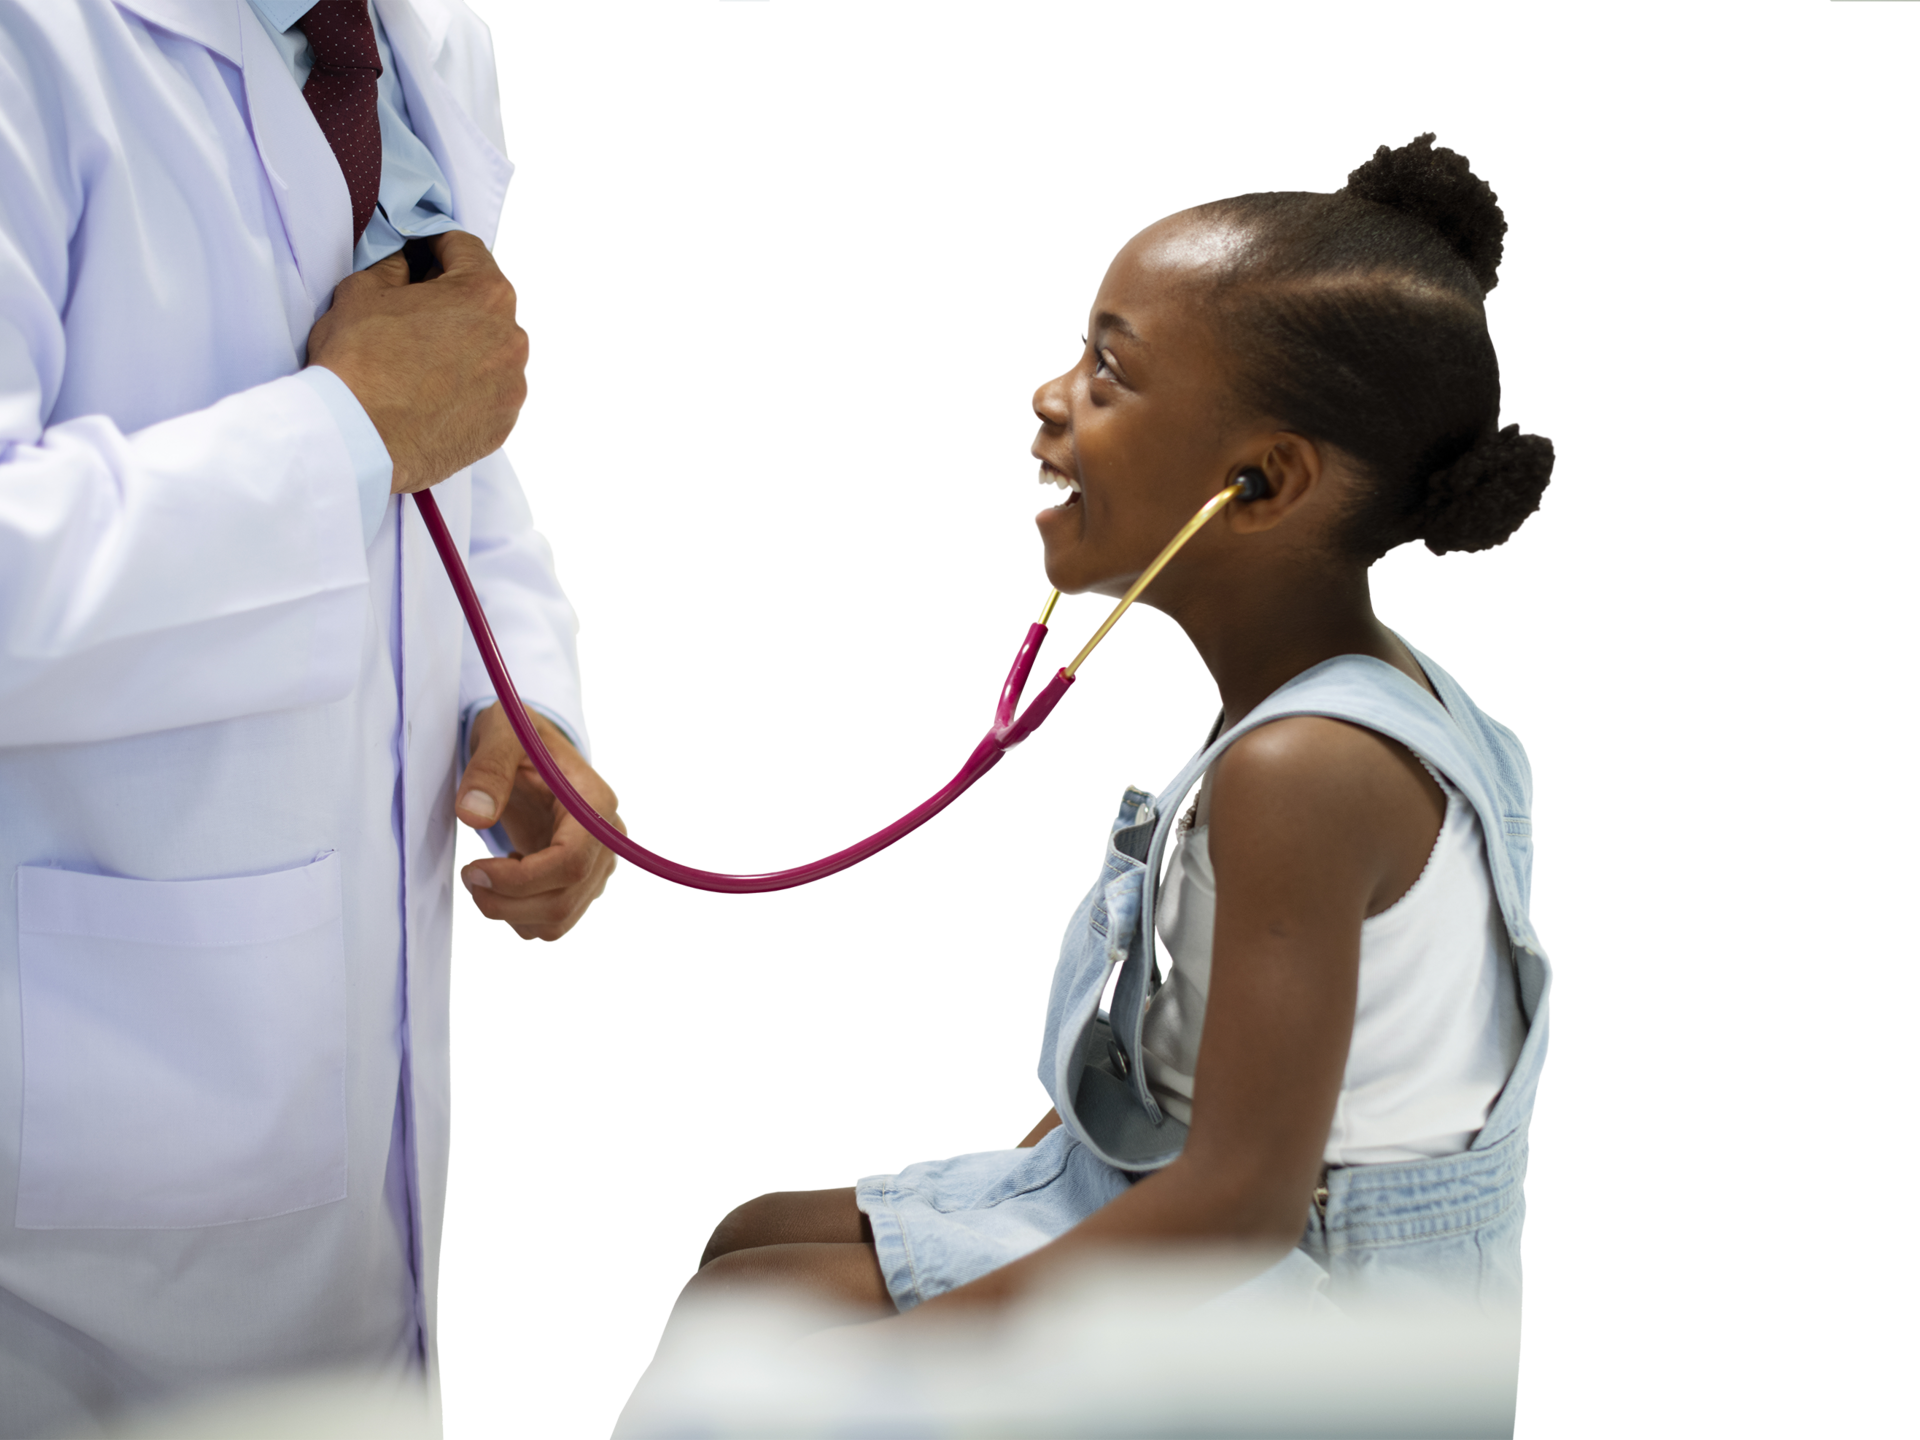 Kleines Mädchen mit Stethoskop hört Arzt ab